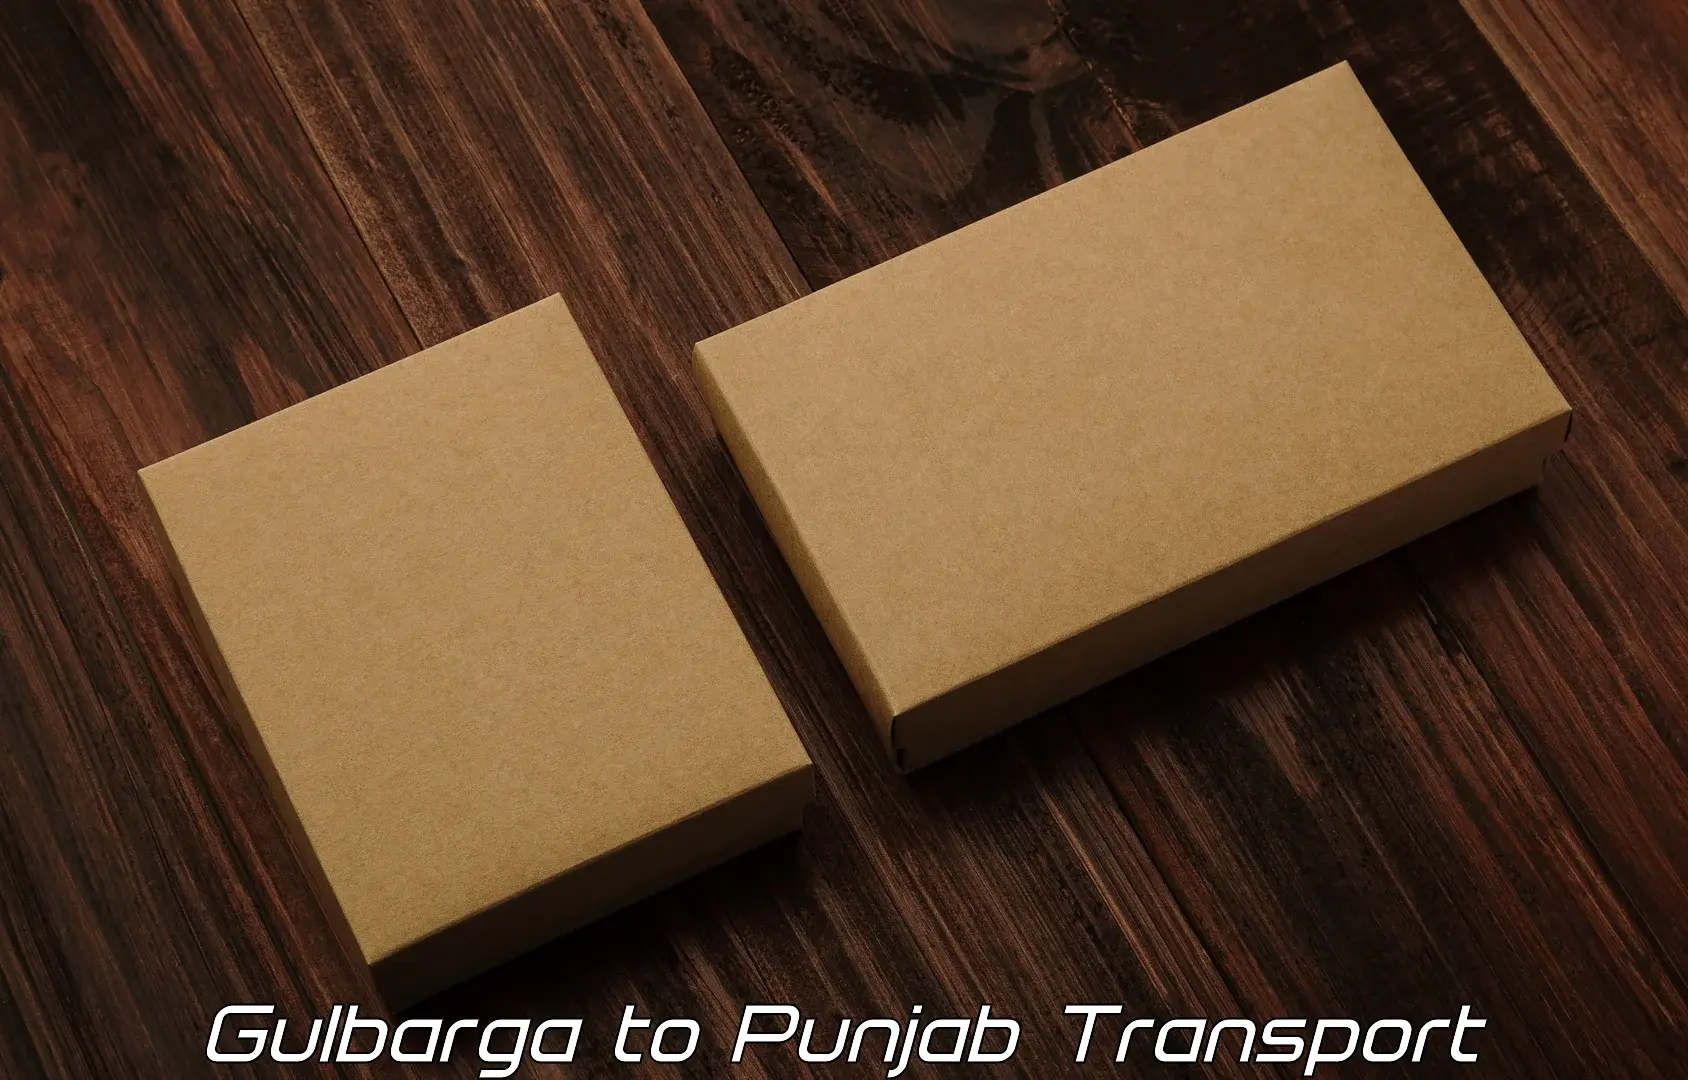 Transportation services Gulbarga to Punjab